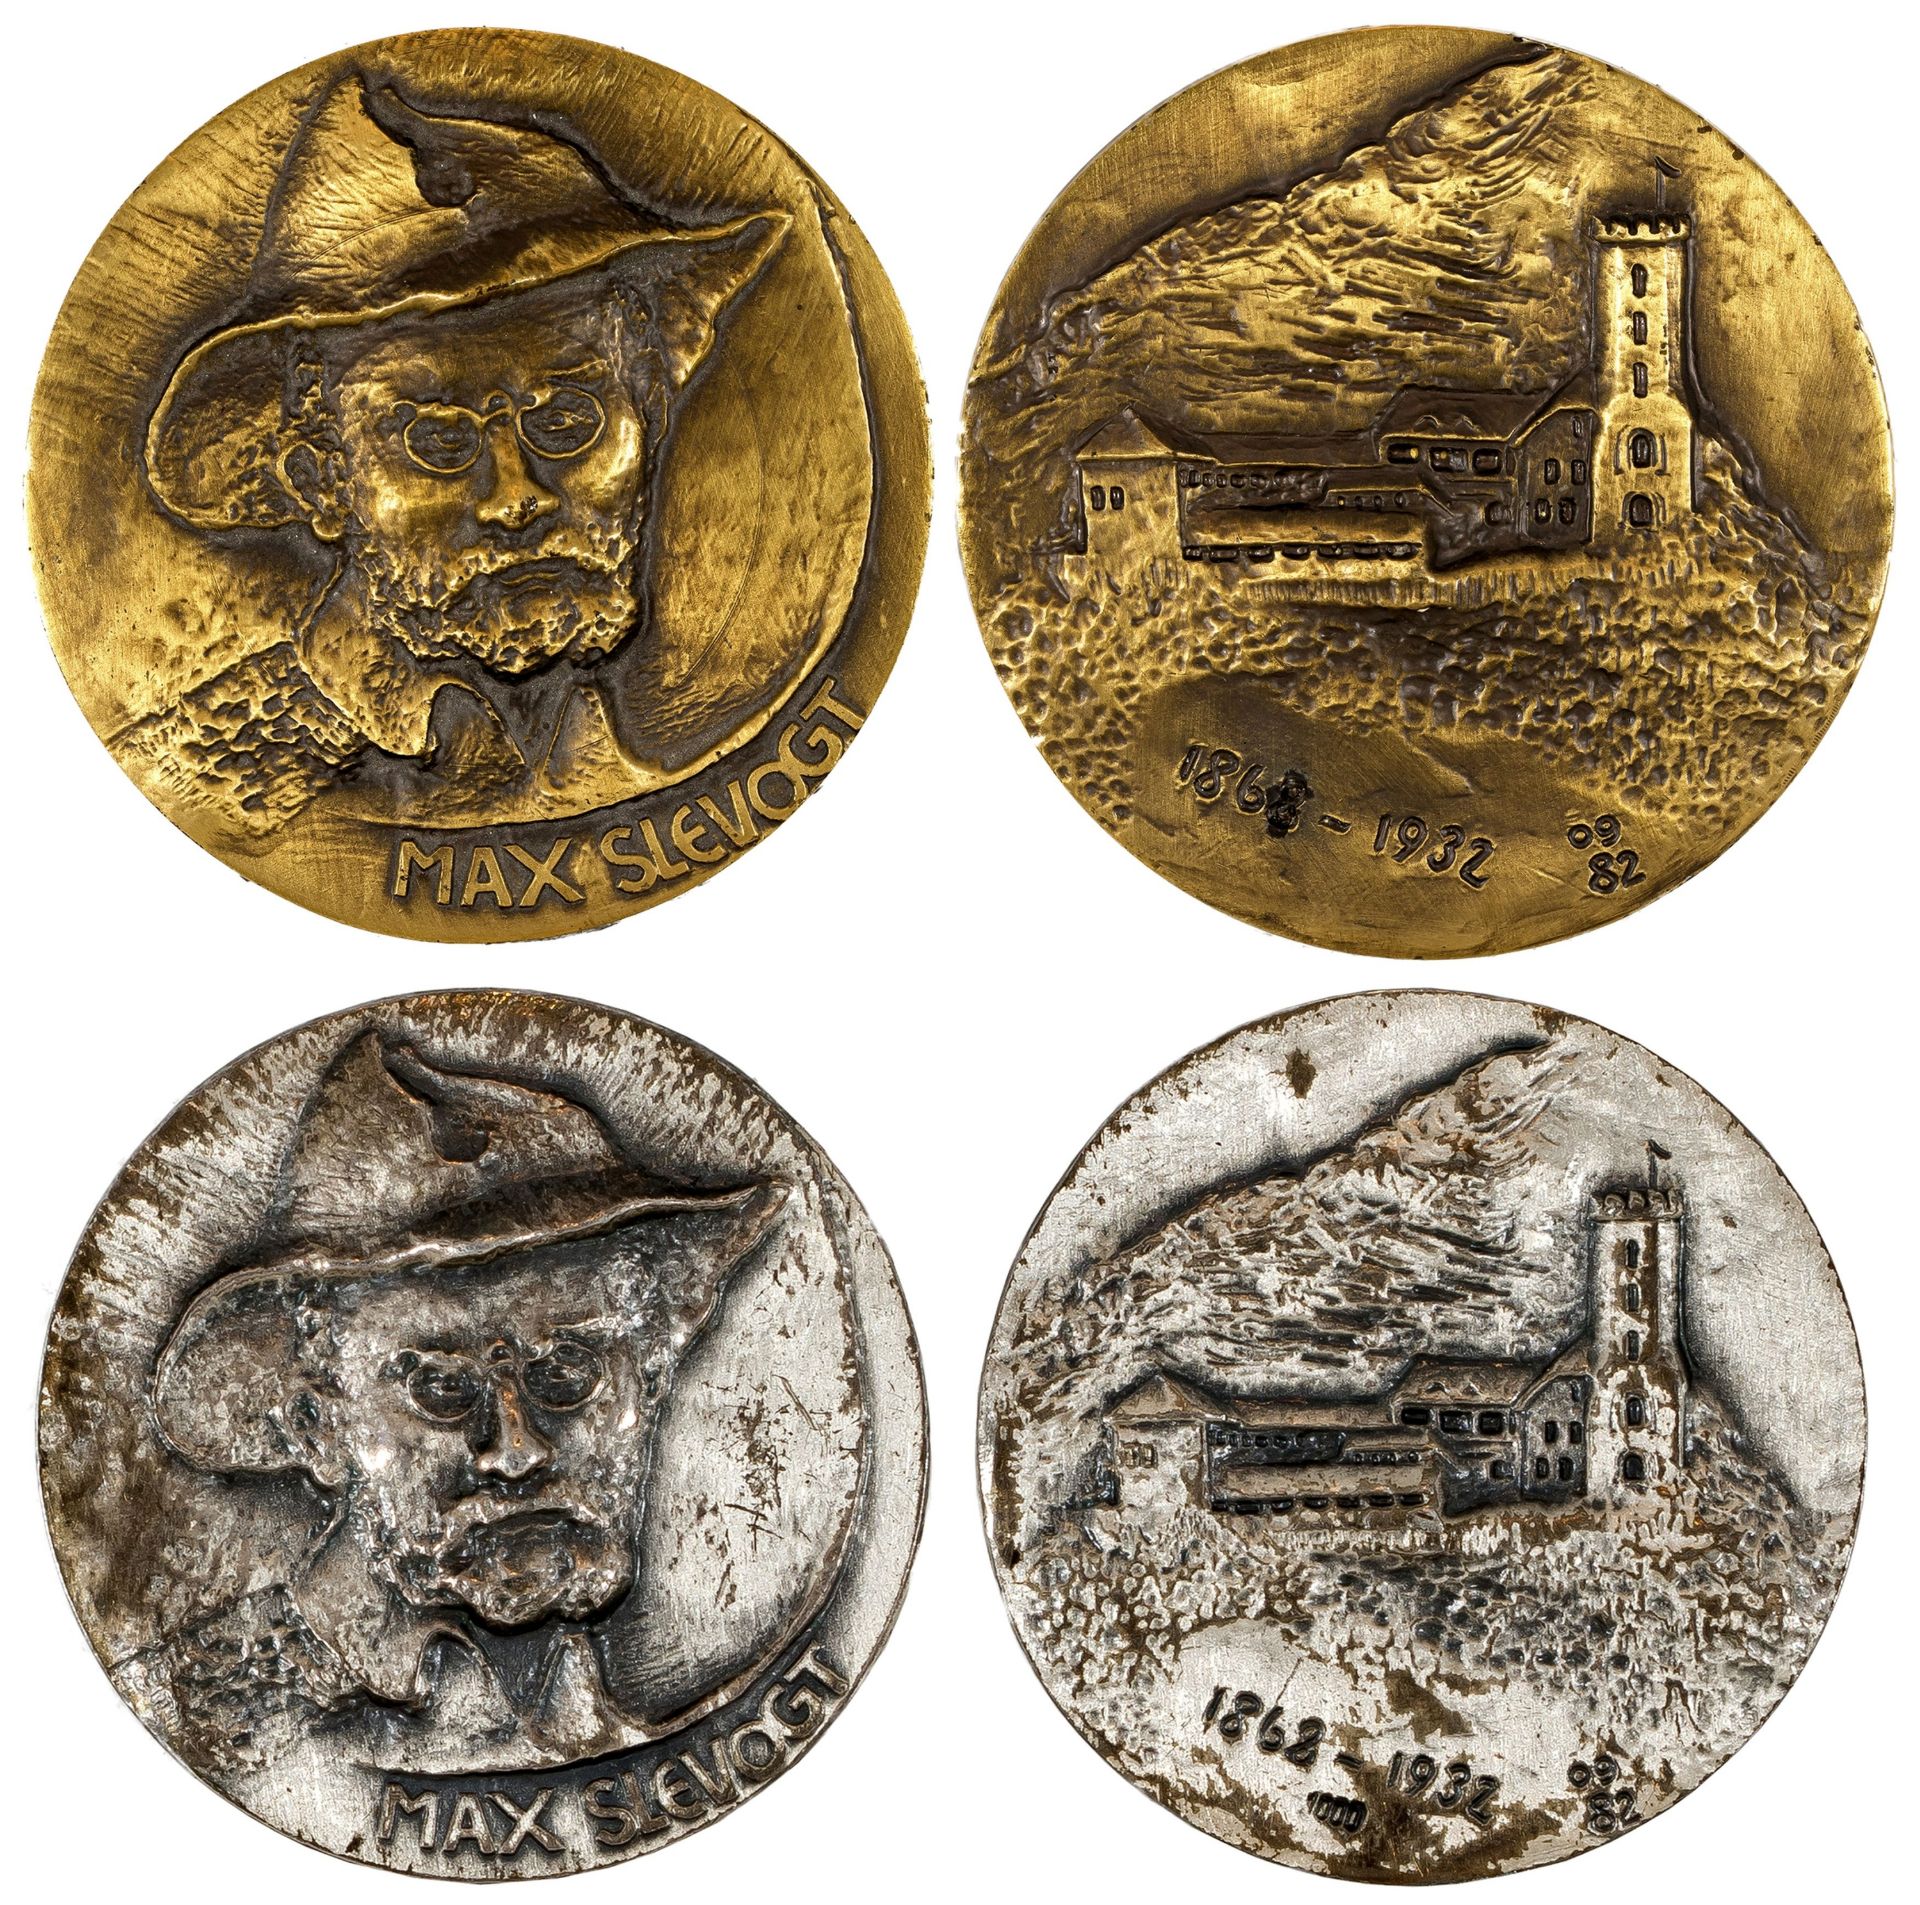 Konvolut von 2 Medaillen "Max Slevogt 1868-1932" (Zum 50. Todestag)